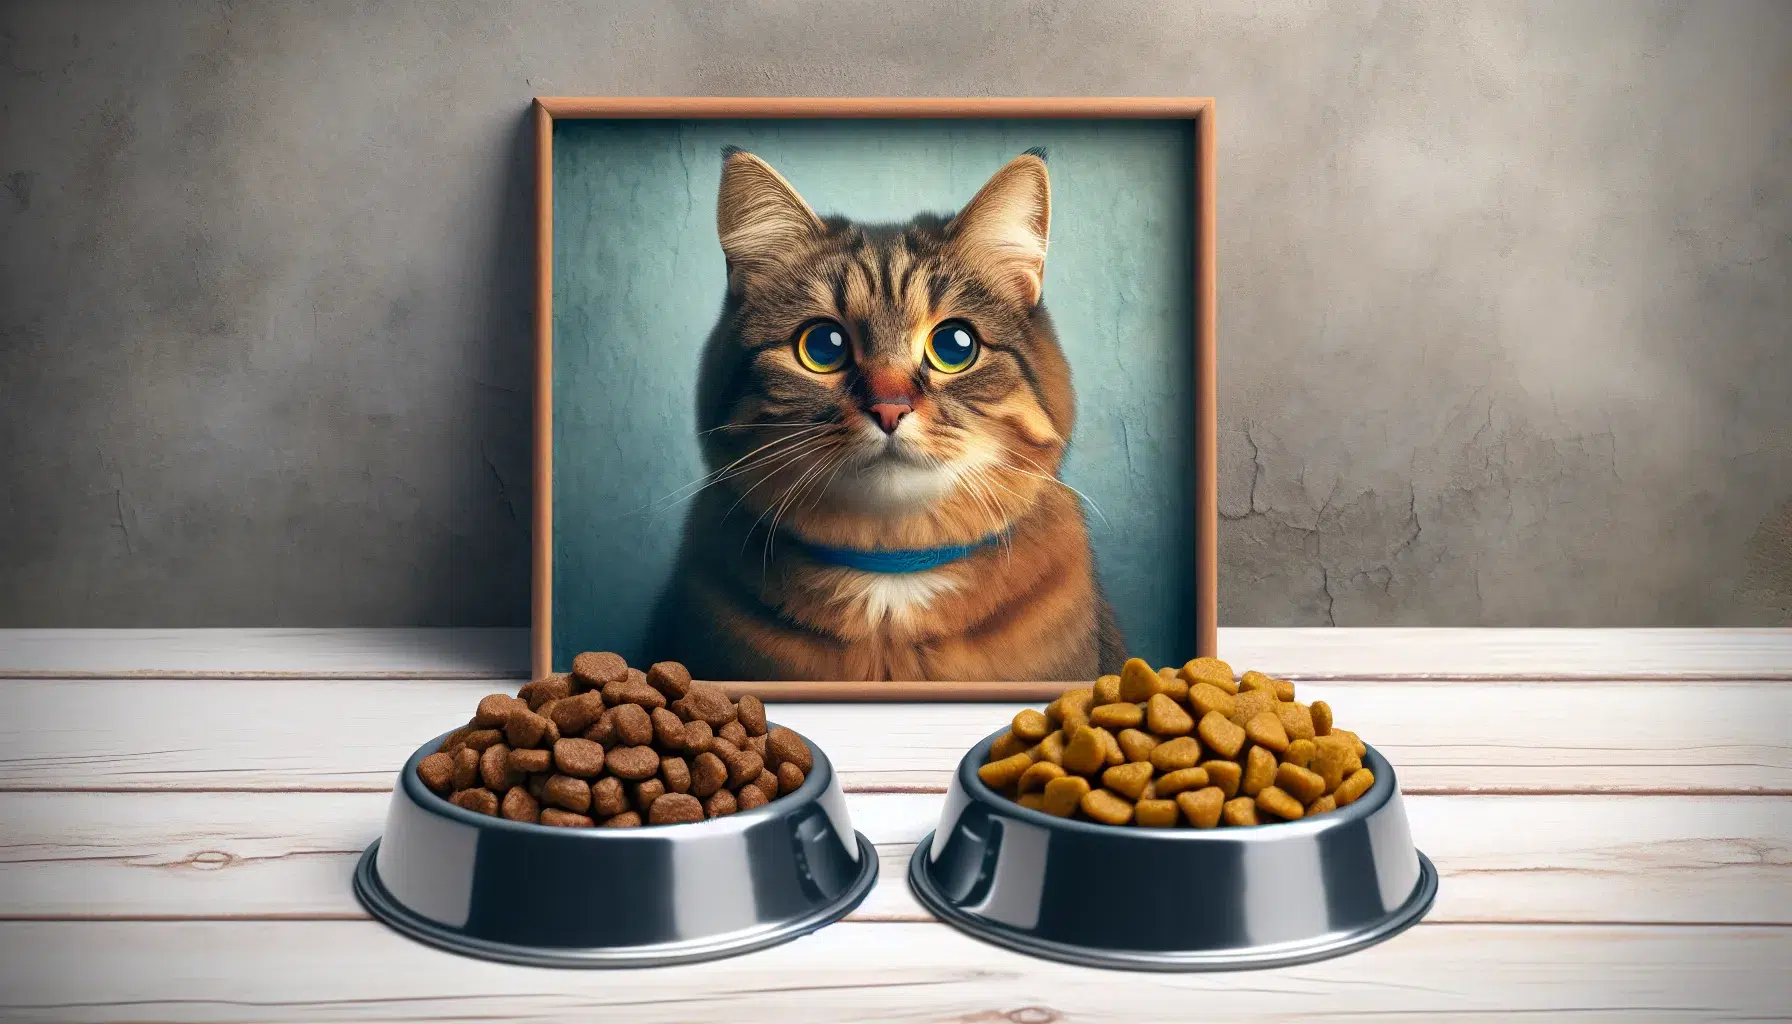 Comparación de alimentos para gatos: pienso vs comida húmeda